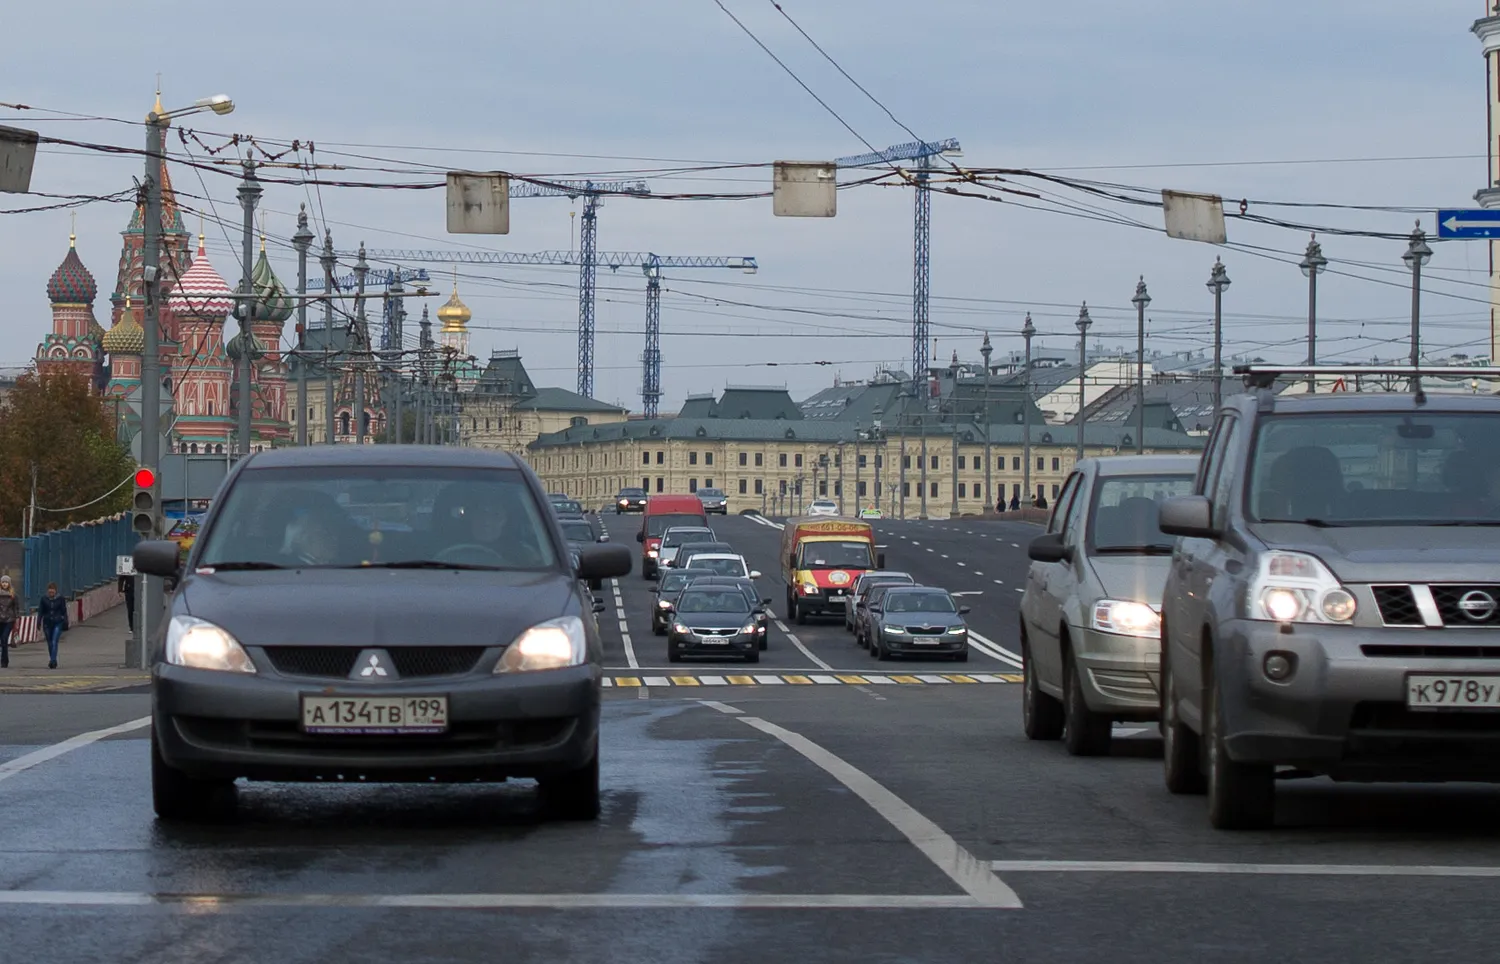 Опросы на Клерк.Ру: читатели хотят отмены транспортного налога и сокращения рабочего дня